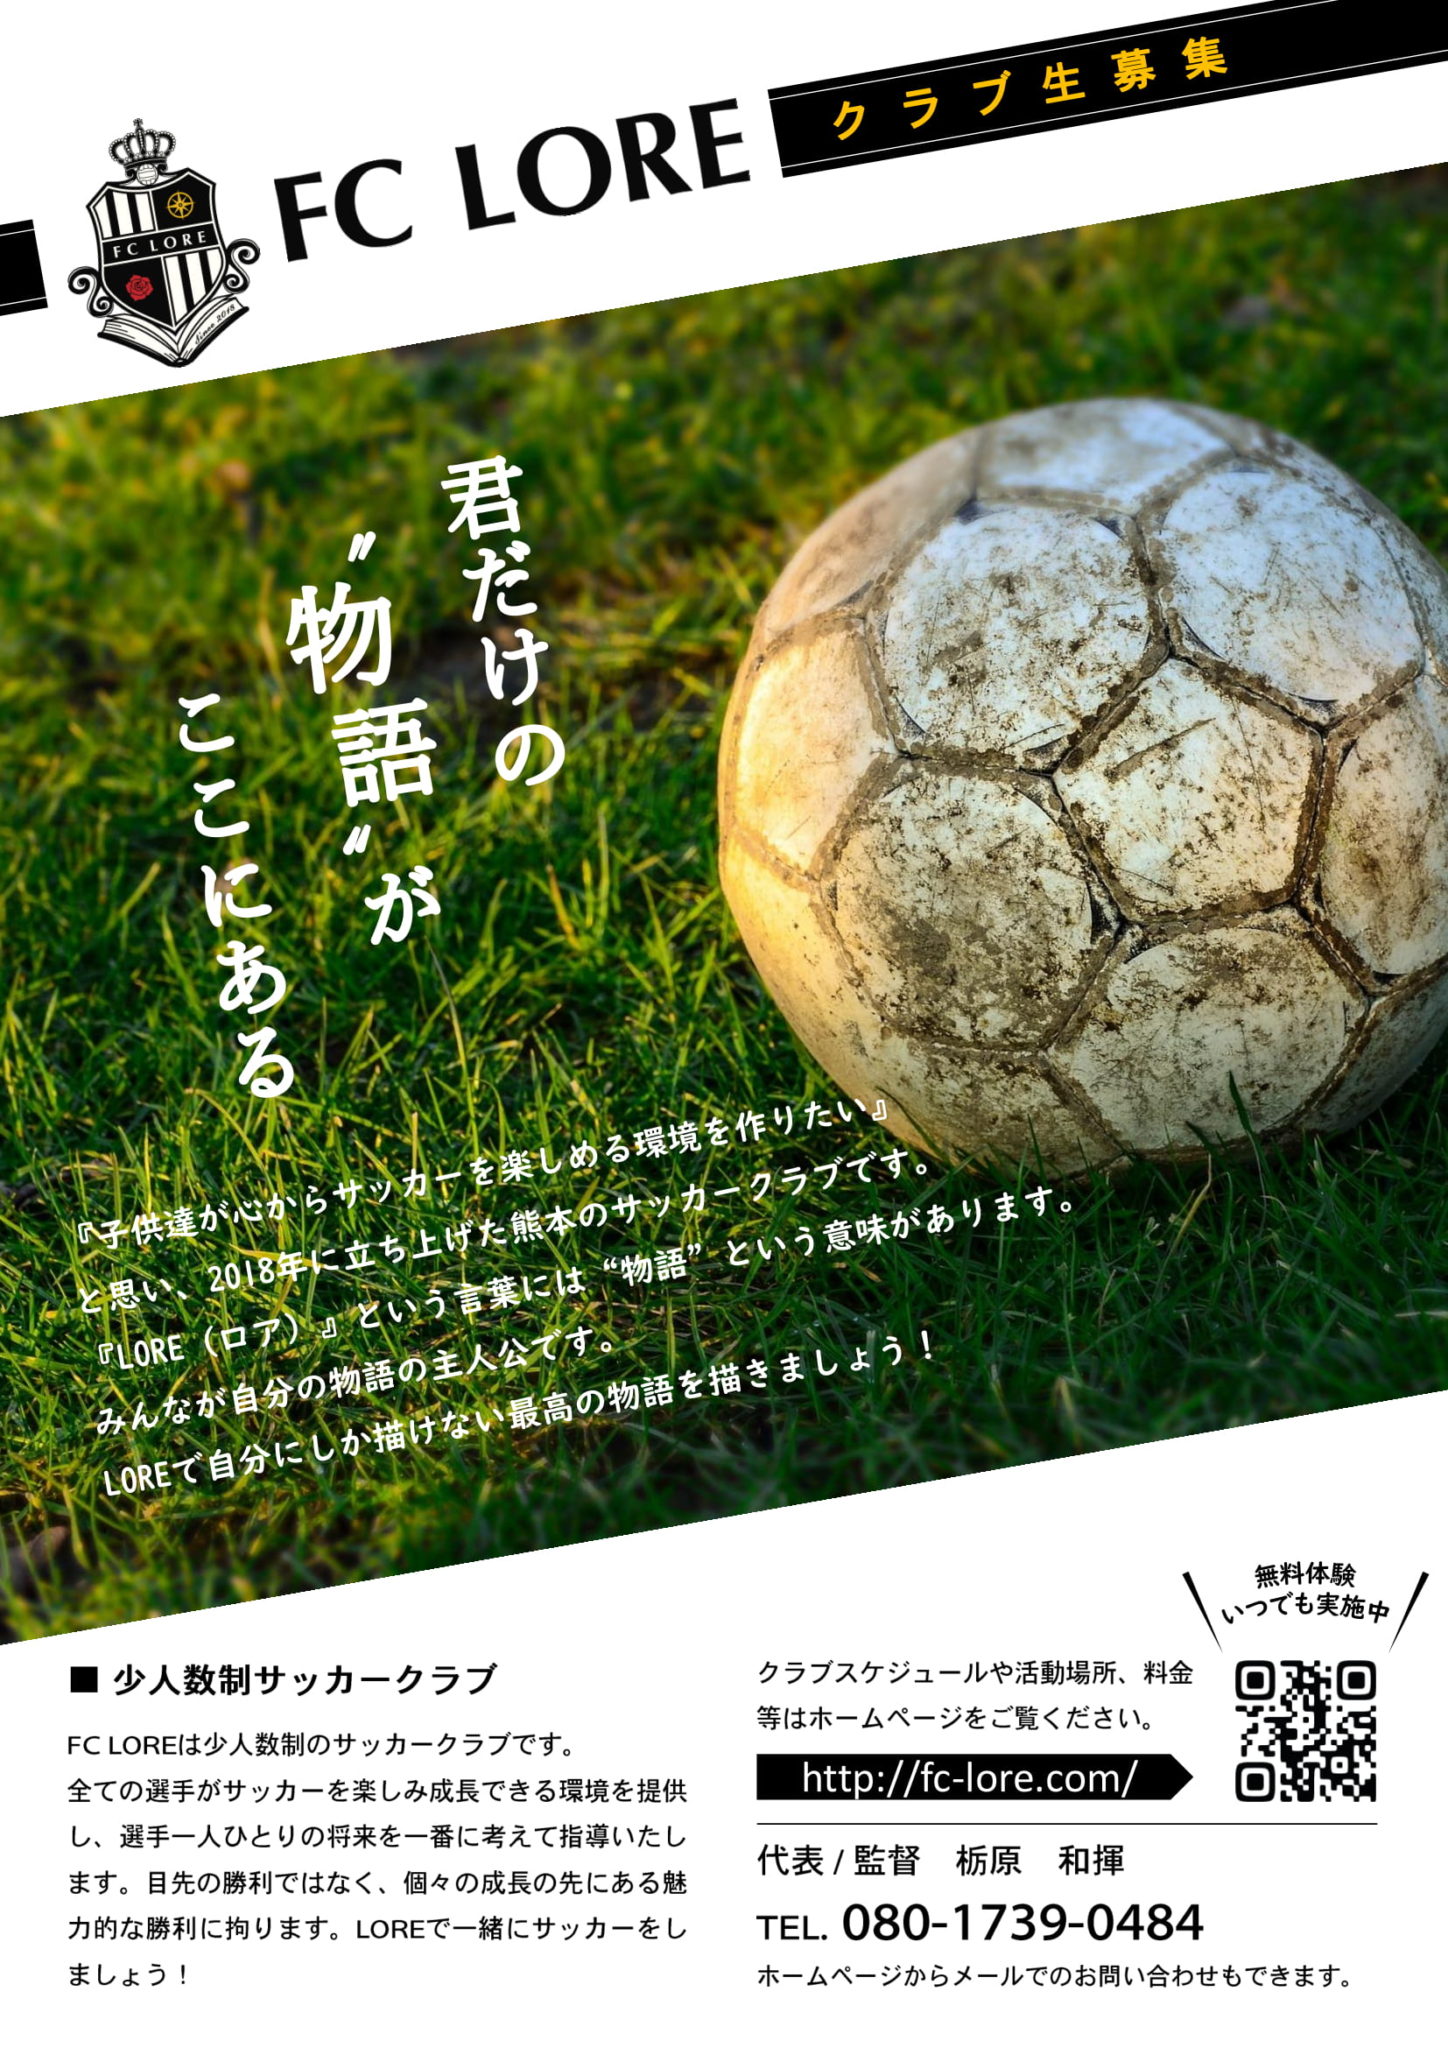 クラブ生募集 Fc Lore 熊本のサッカークラブ